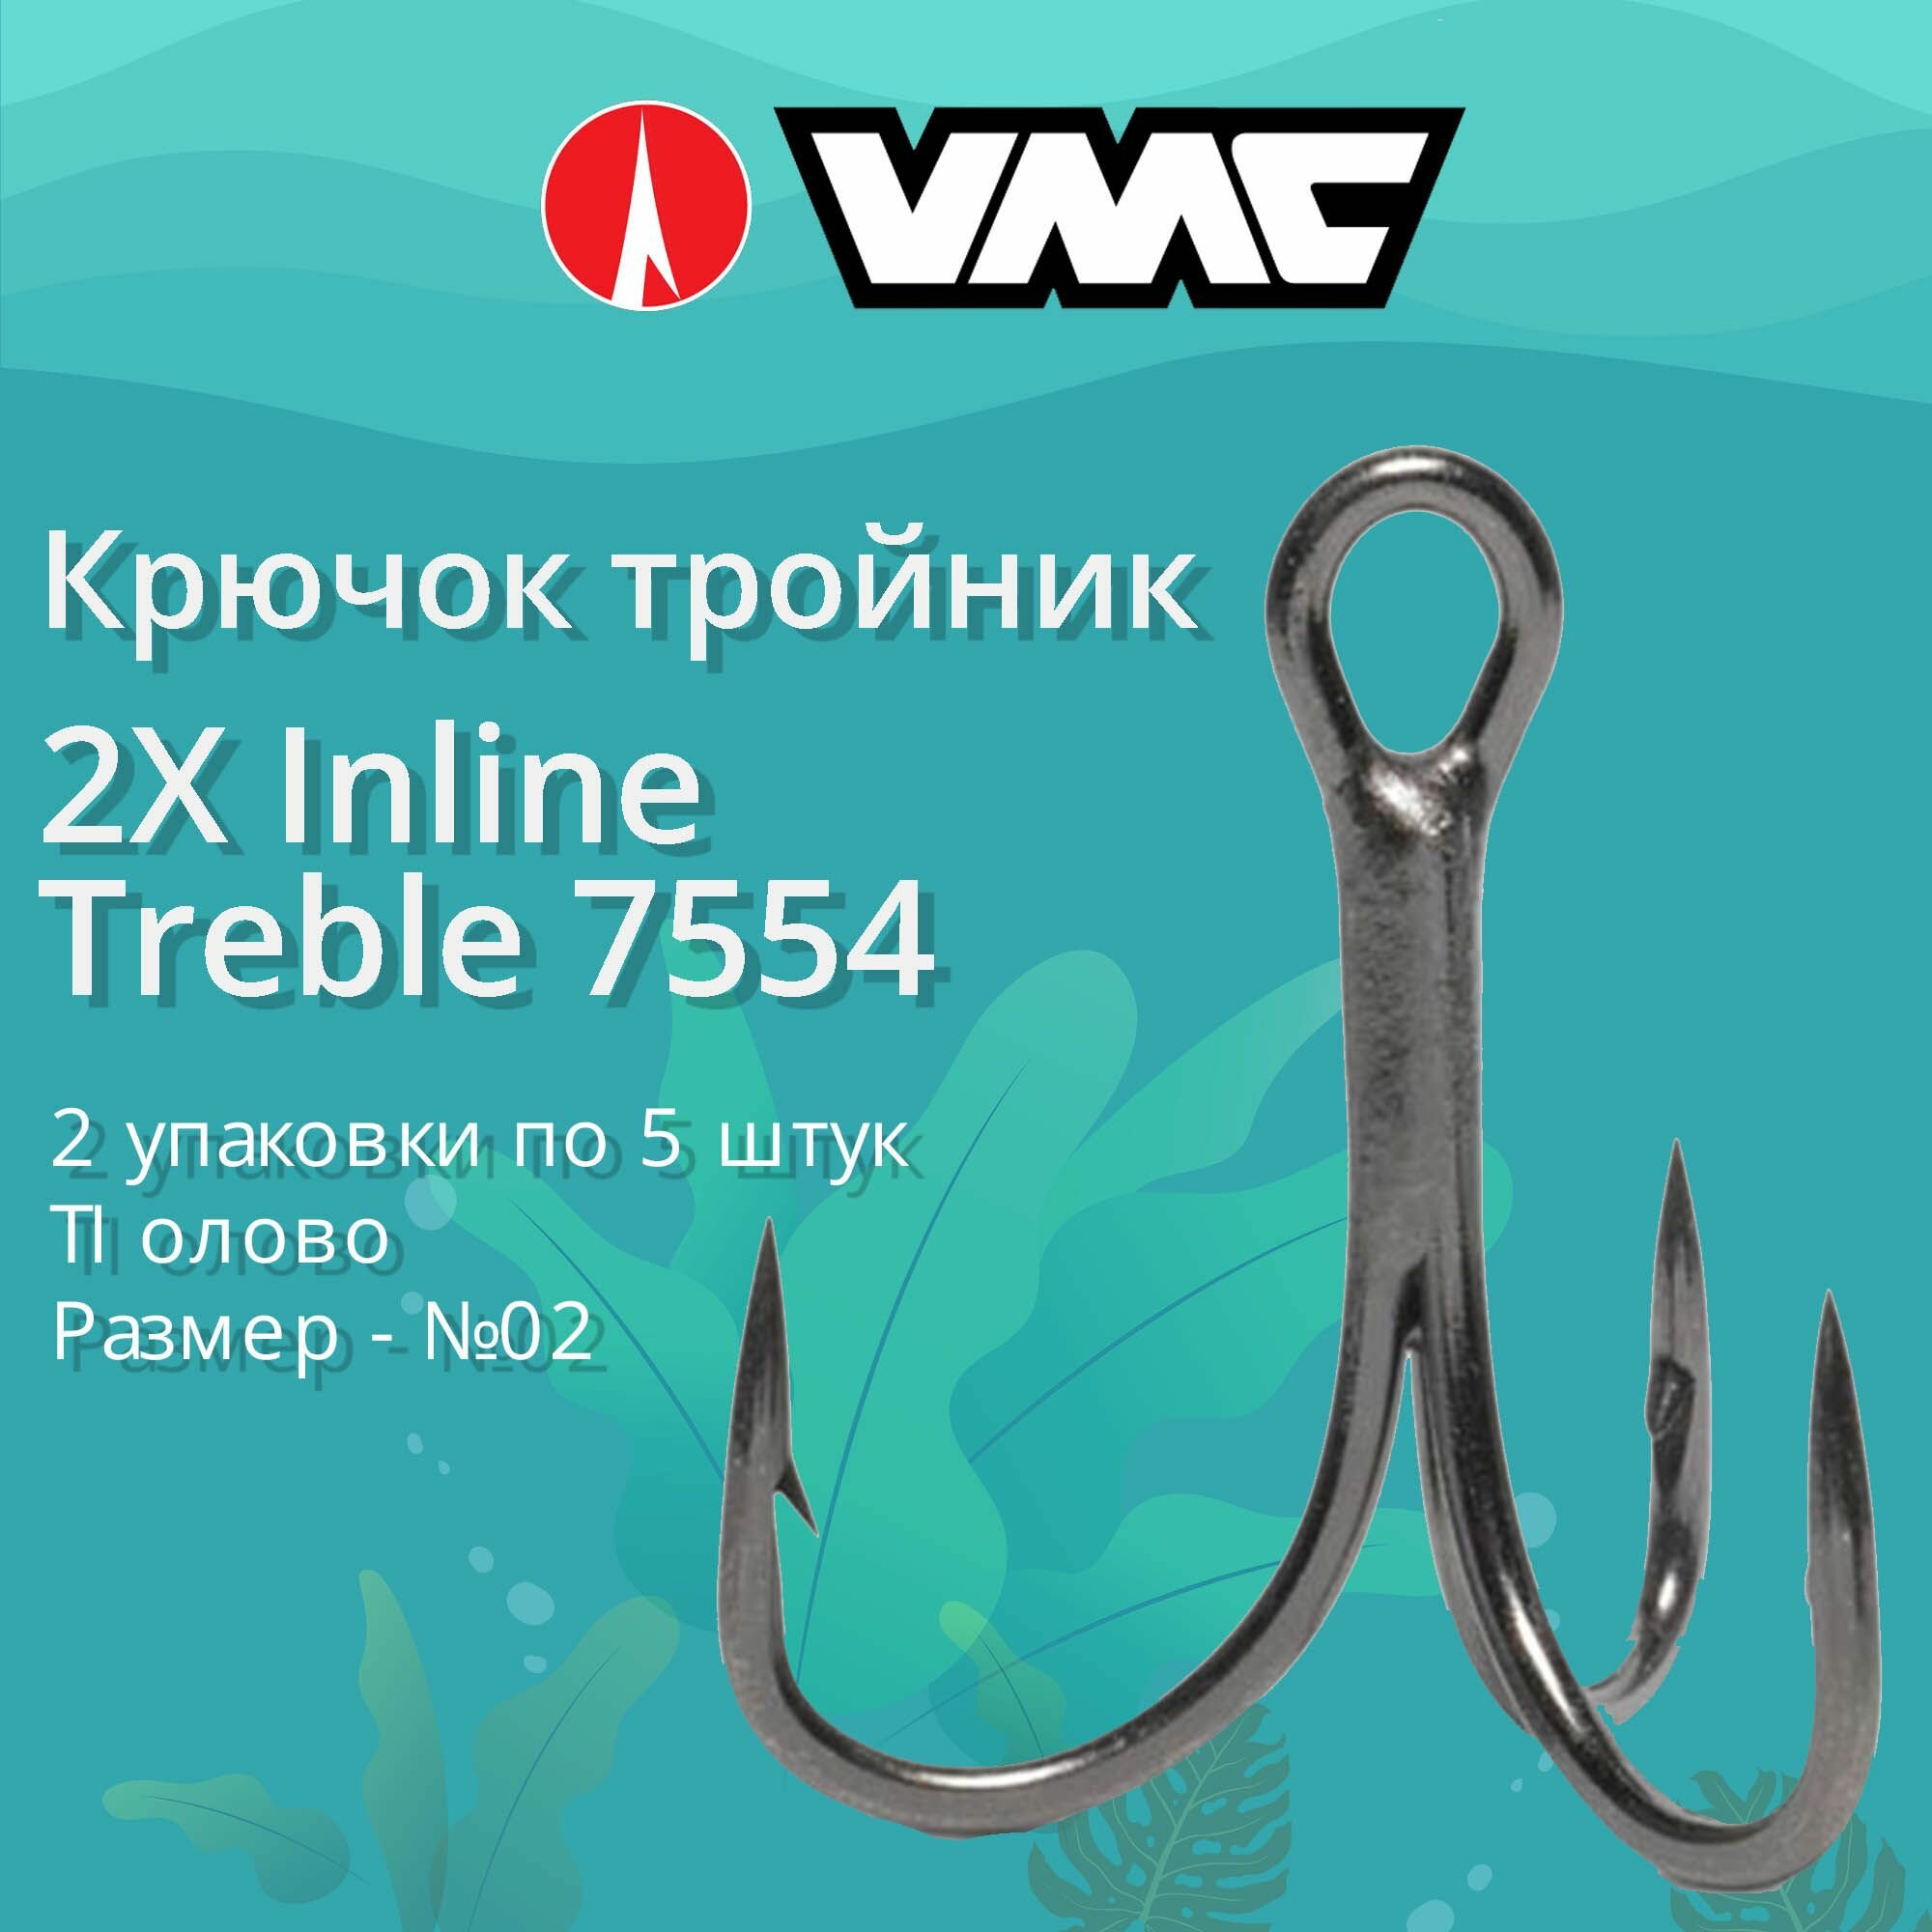 Крючки для рыбалки (тройник) VMC 2X Inline Treble 7554 TI (олово) №02 (2 упаковки по 5 штук)